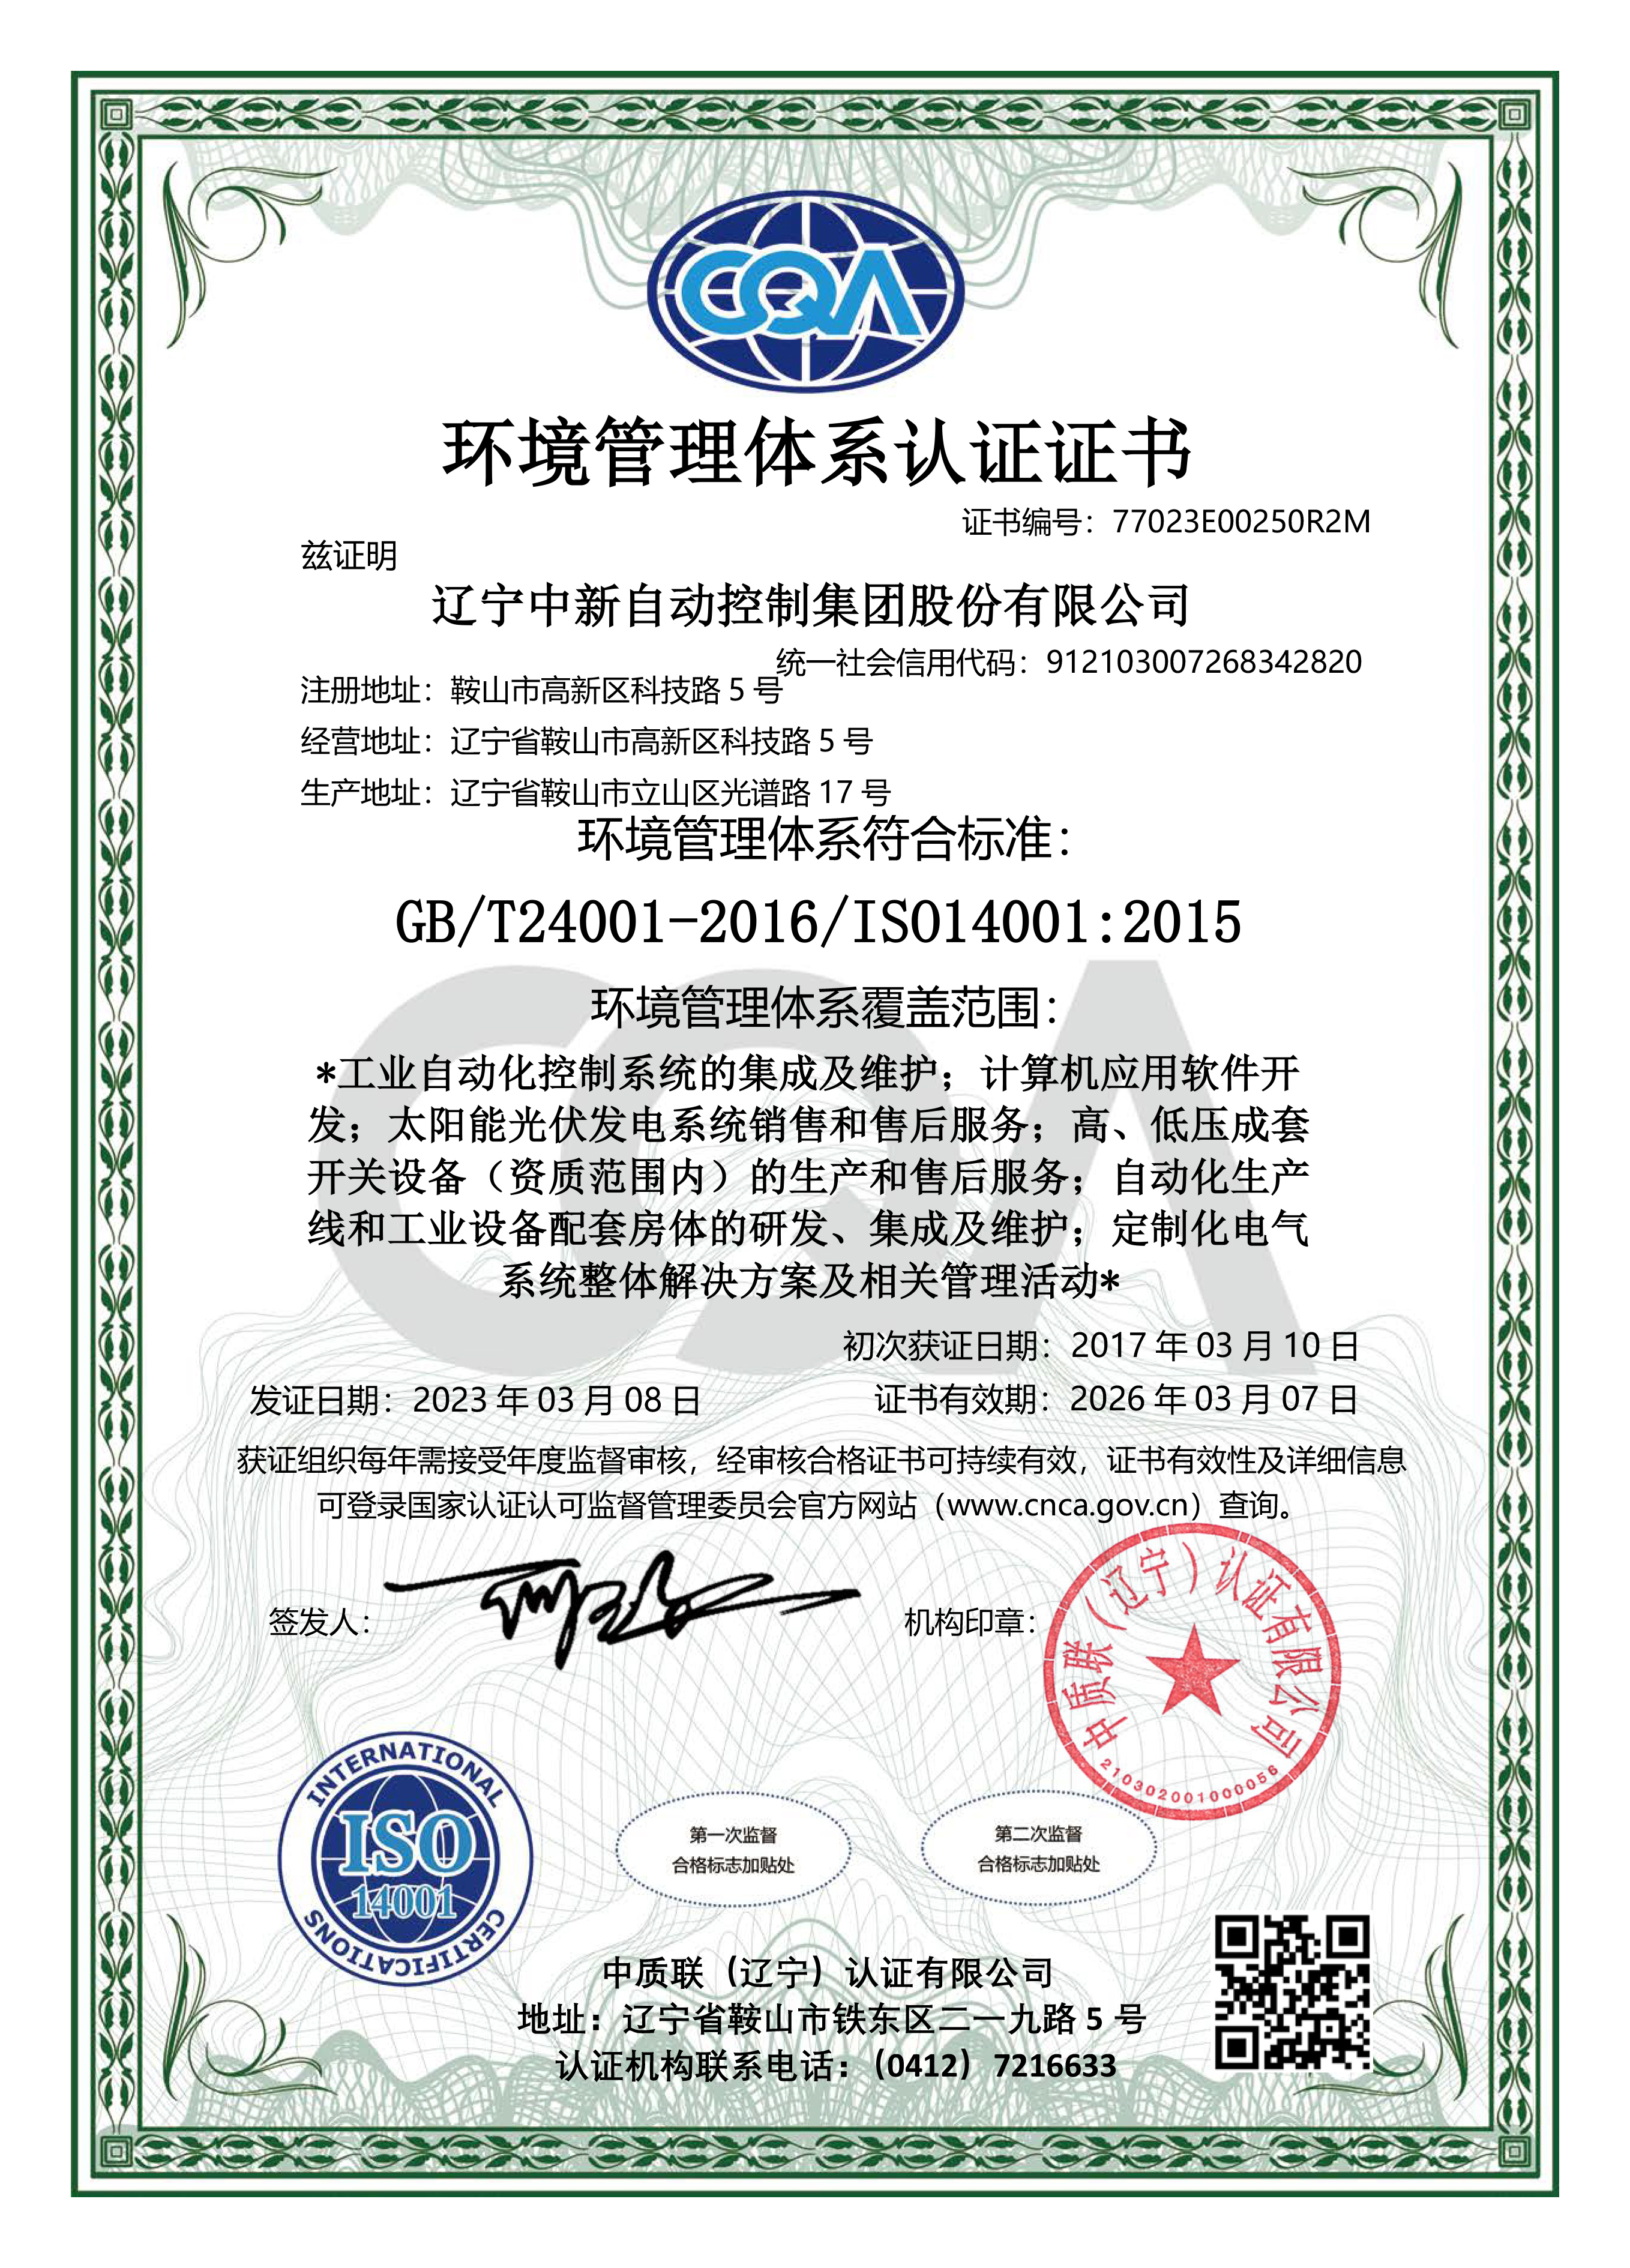 环境管理体系认证证书-中文-资质证书-辽宁中新